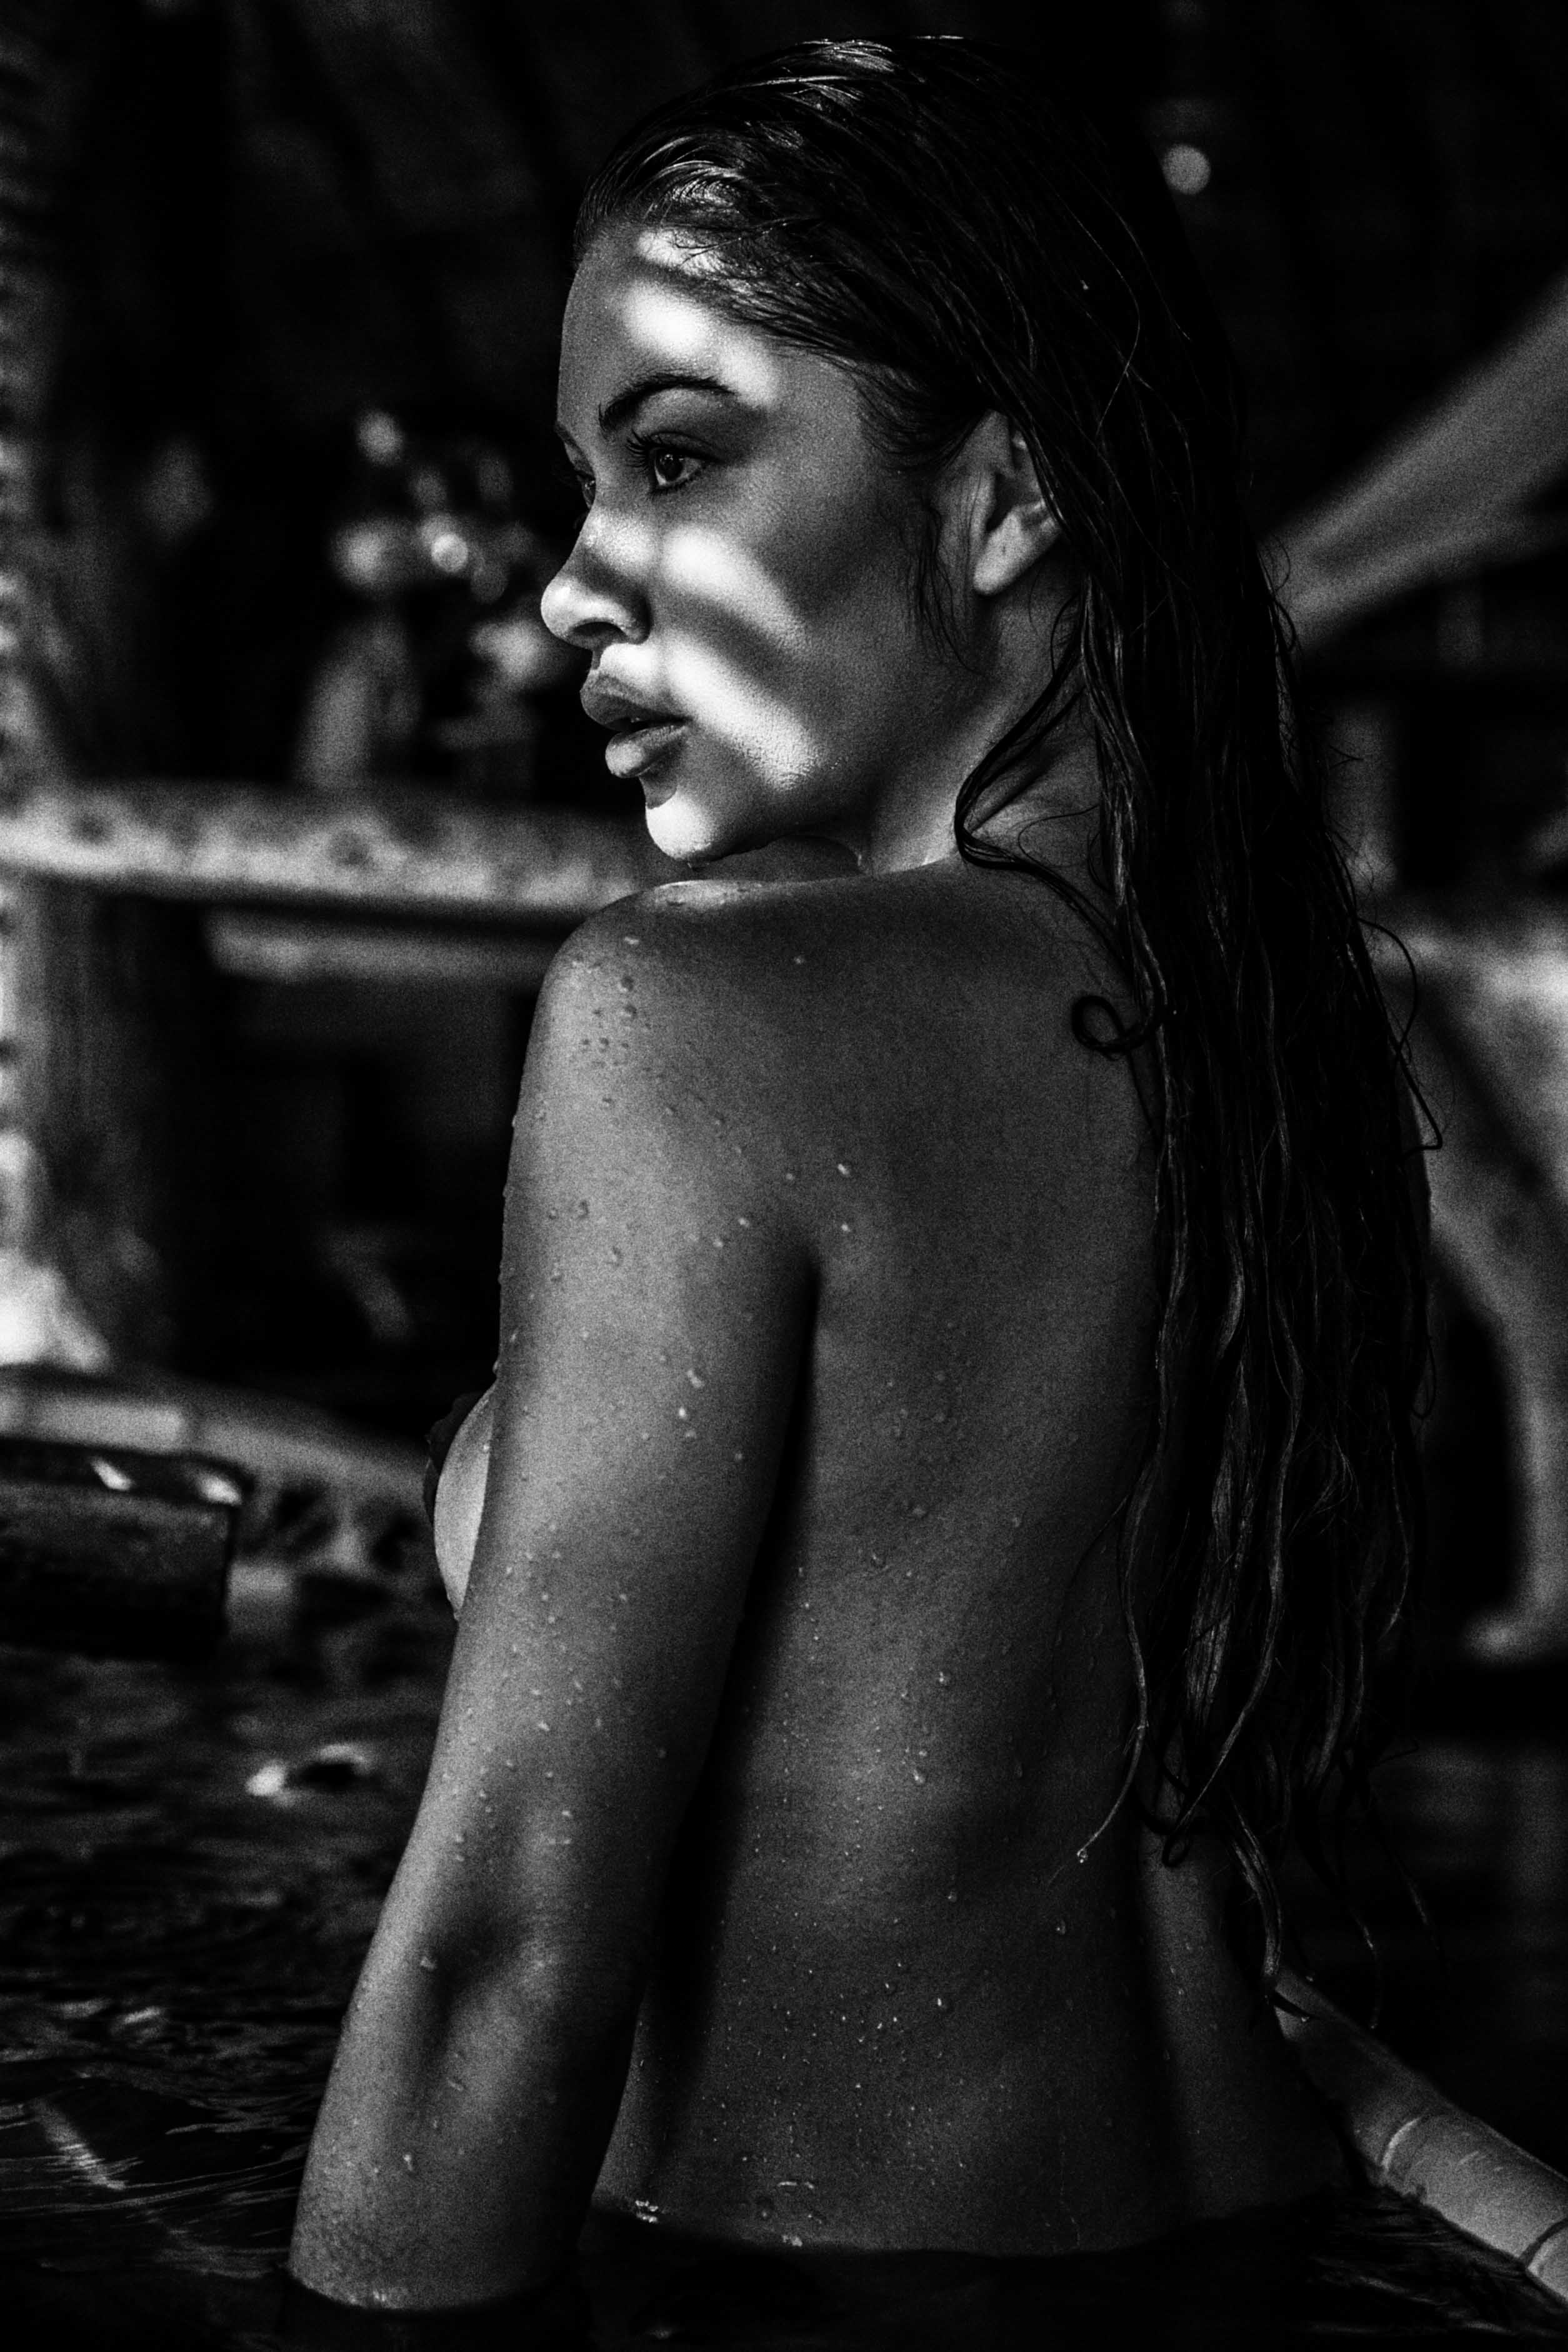 Arianny Celeste nude in TULUM MEXICO - Badboi photo shoot 20x UHQ photos 14.jpg